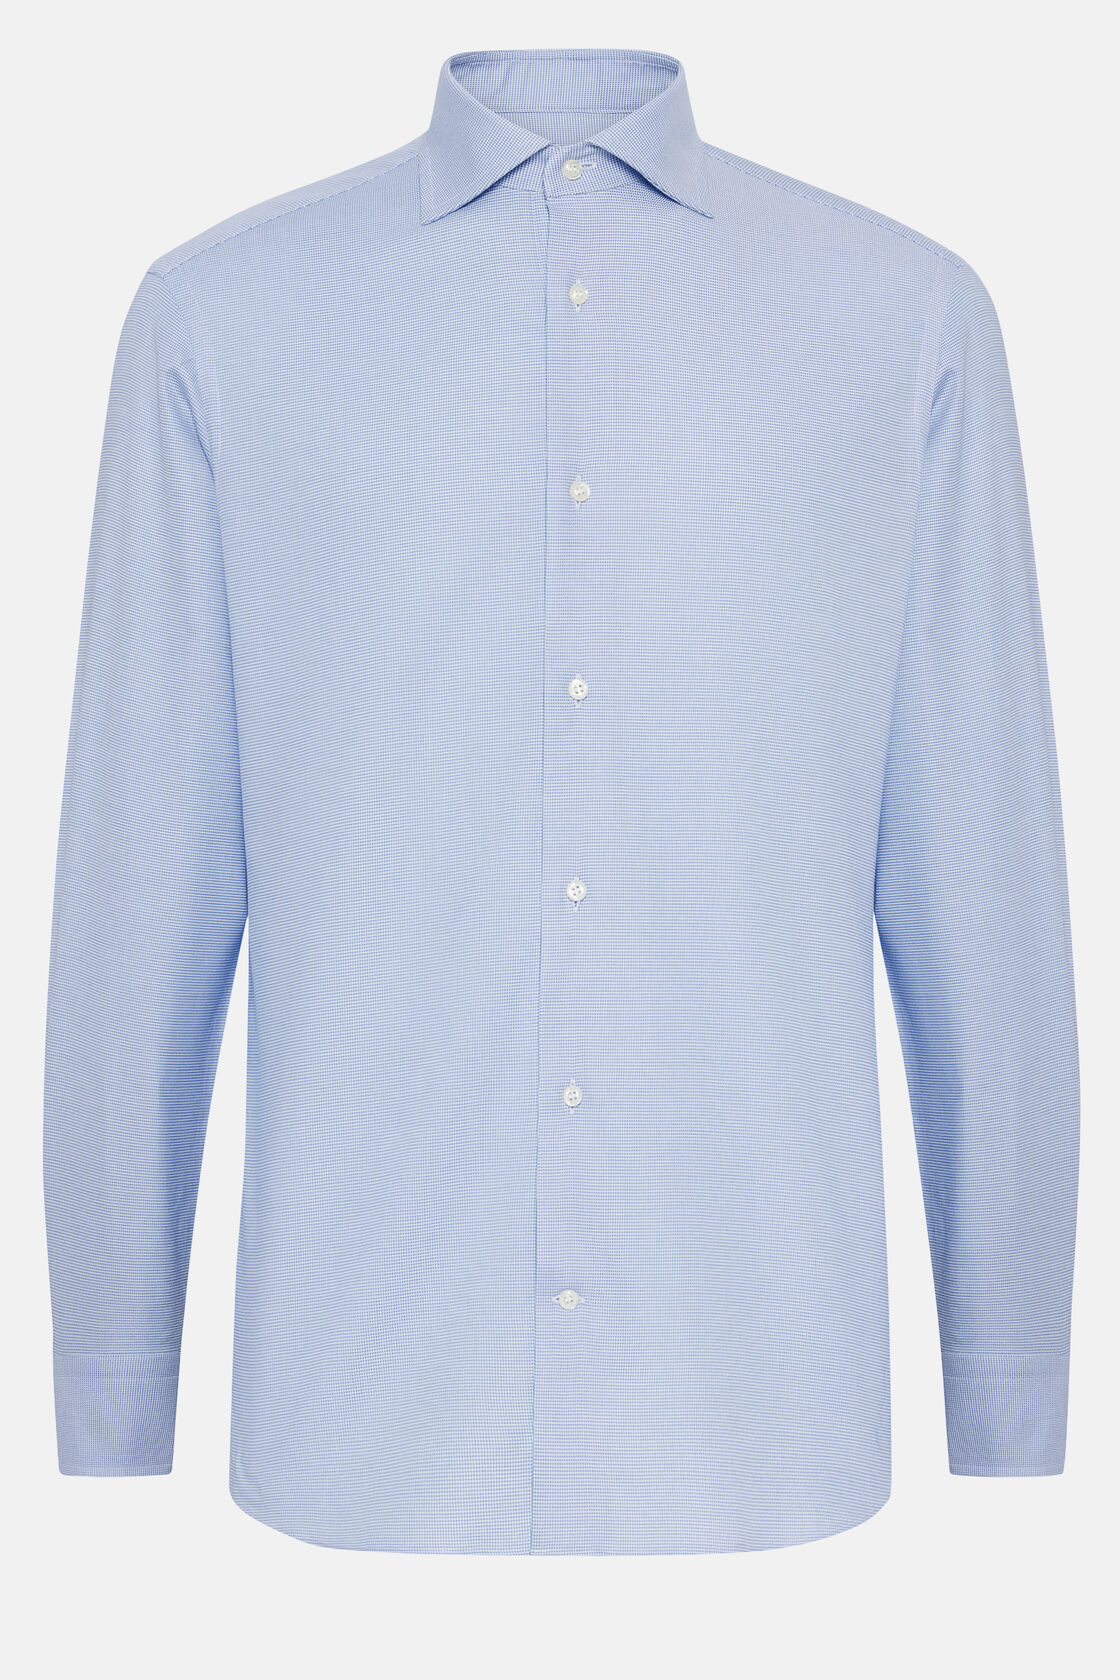 Camisa de algodão pied-de-poule azul-celeste Slim Fit, Light Blue, hi-res